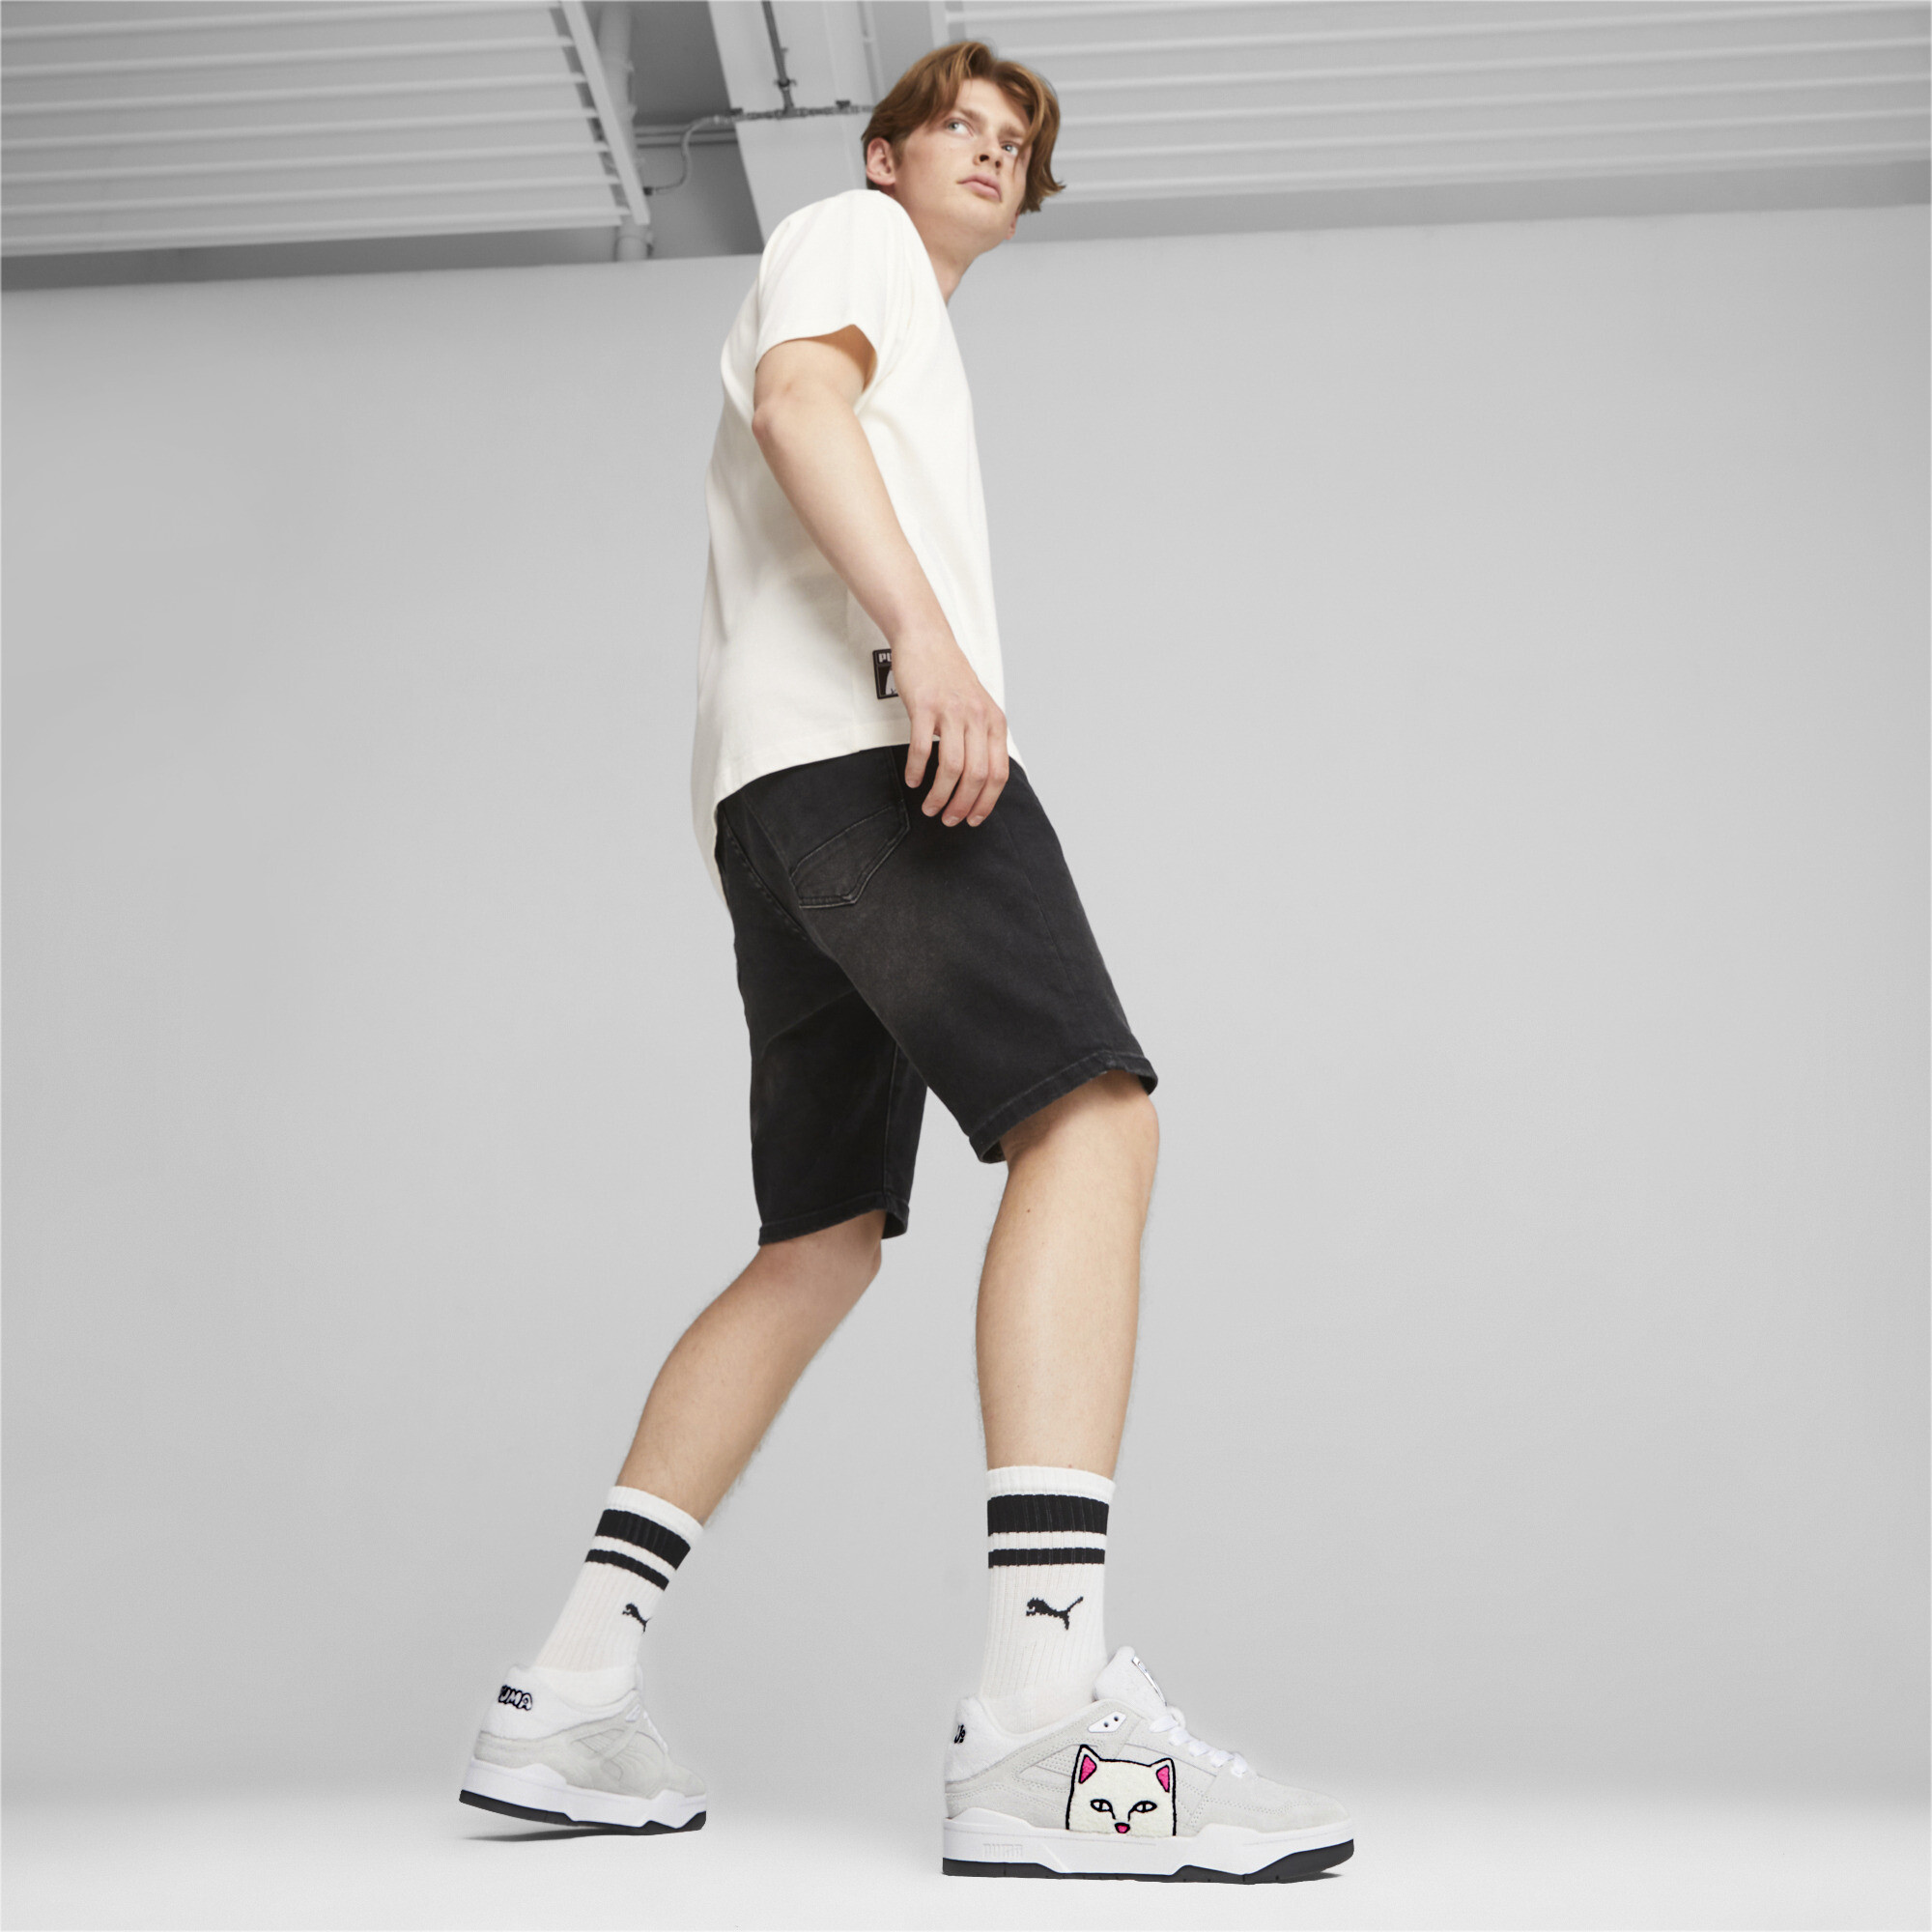 Men's PUMA X RIPNDIP Slipstream Sneakers In White, Size EU 40